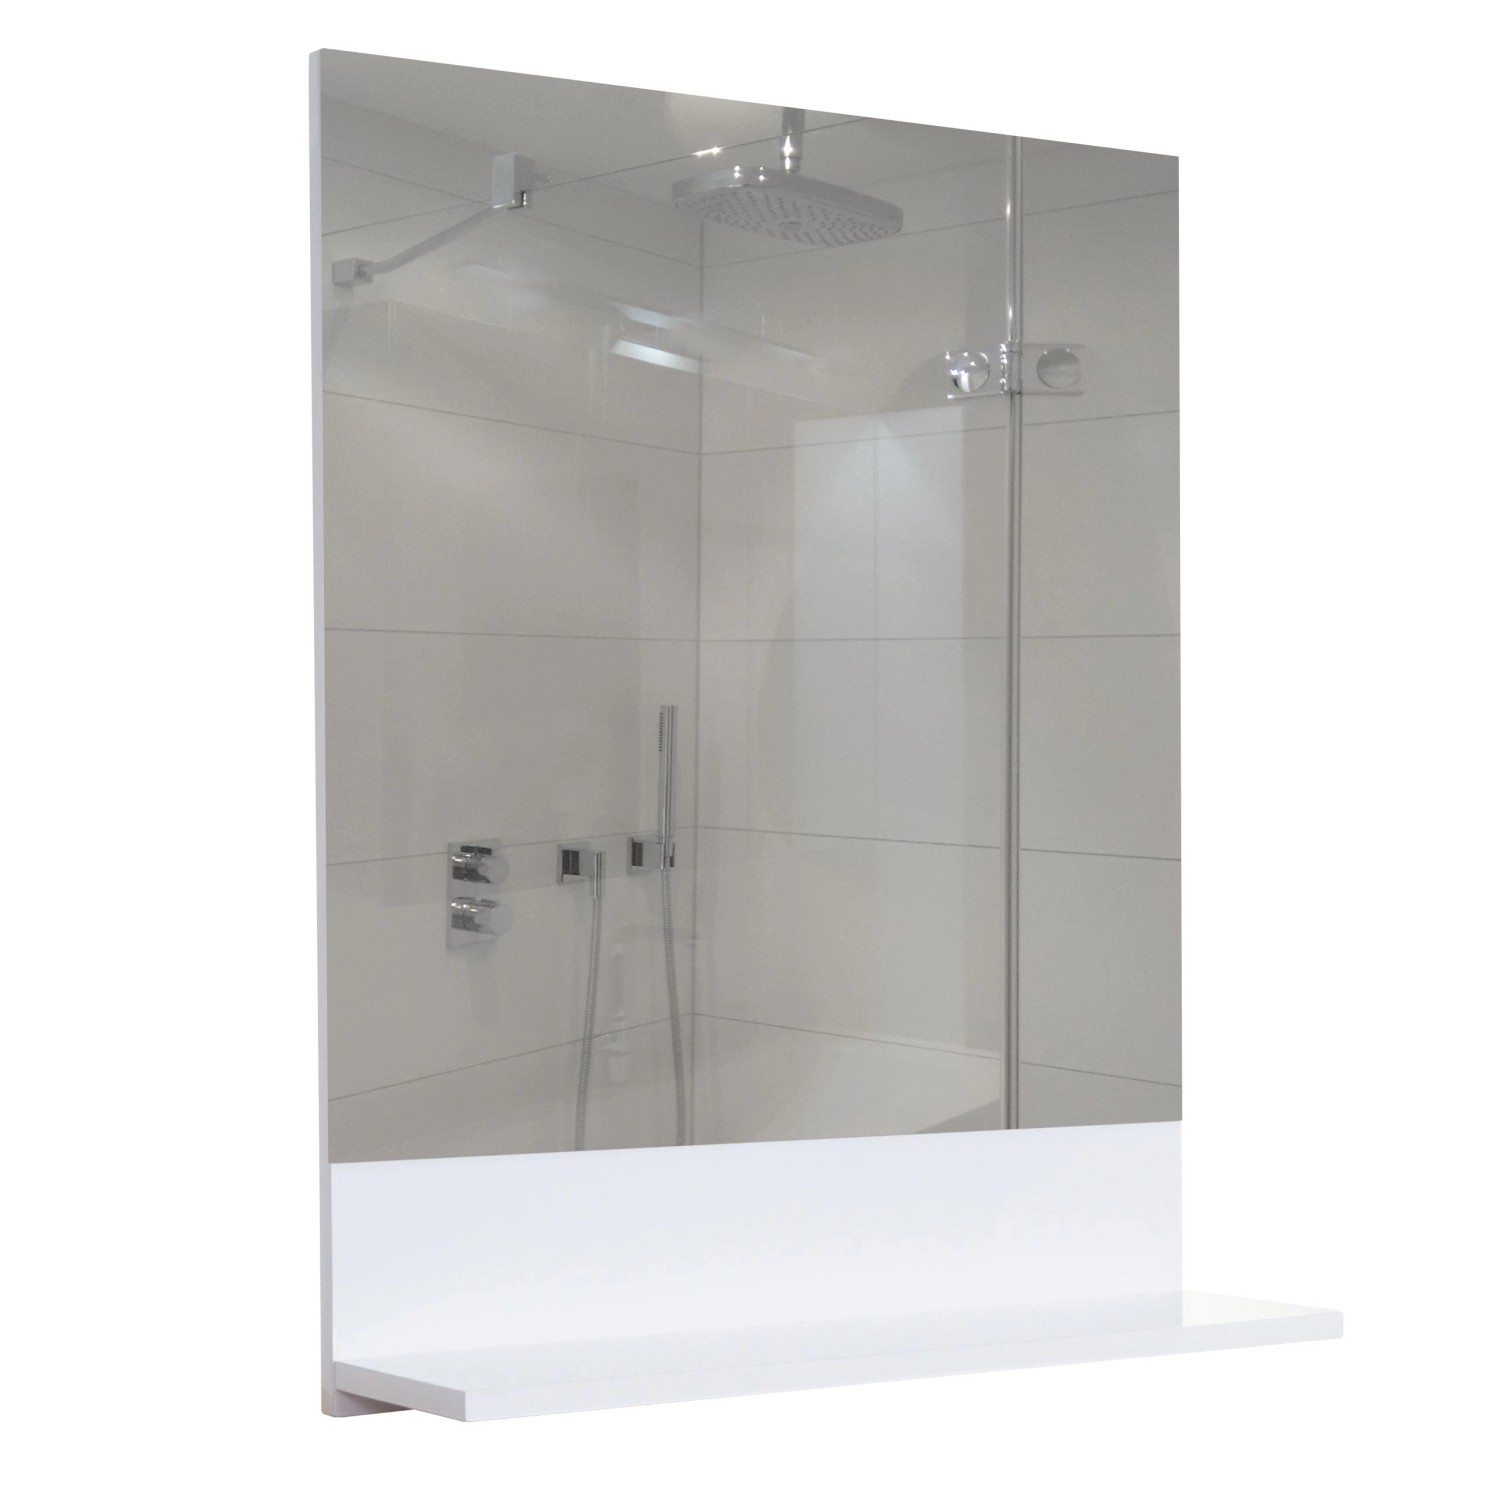 MCW Wandspiegel mit Ablage B19 Badspiegel Badezimmer Hochglanz 75x80cm Weiß